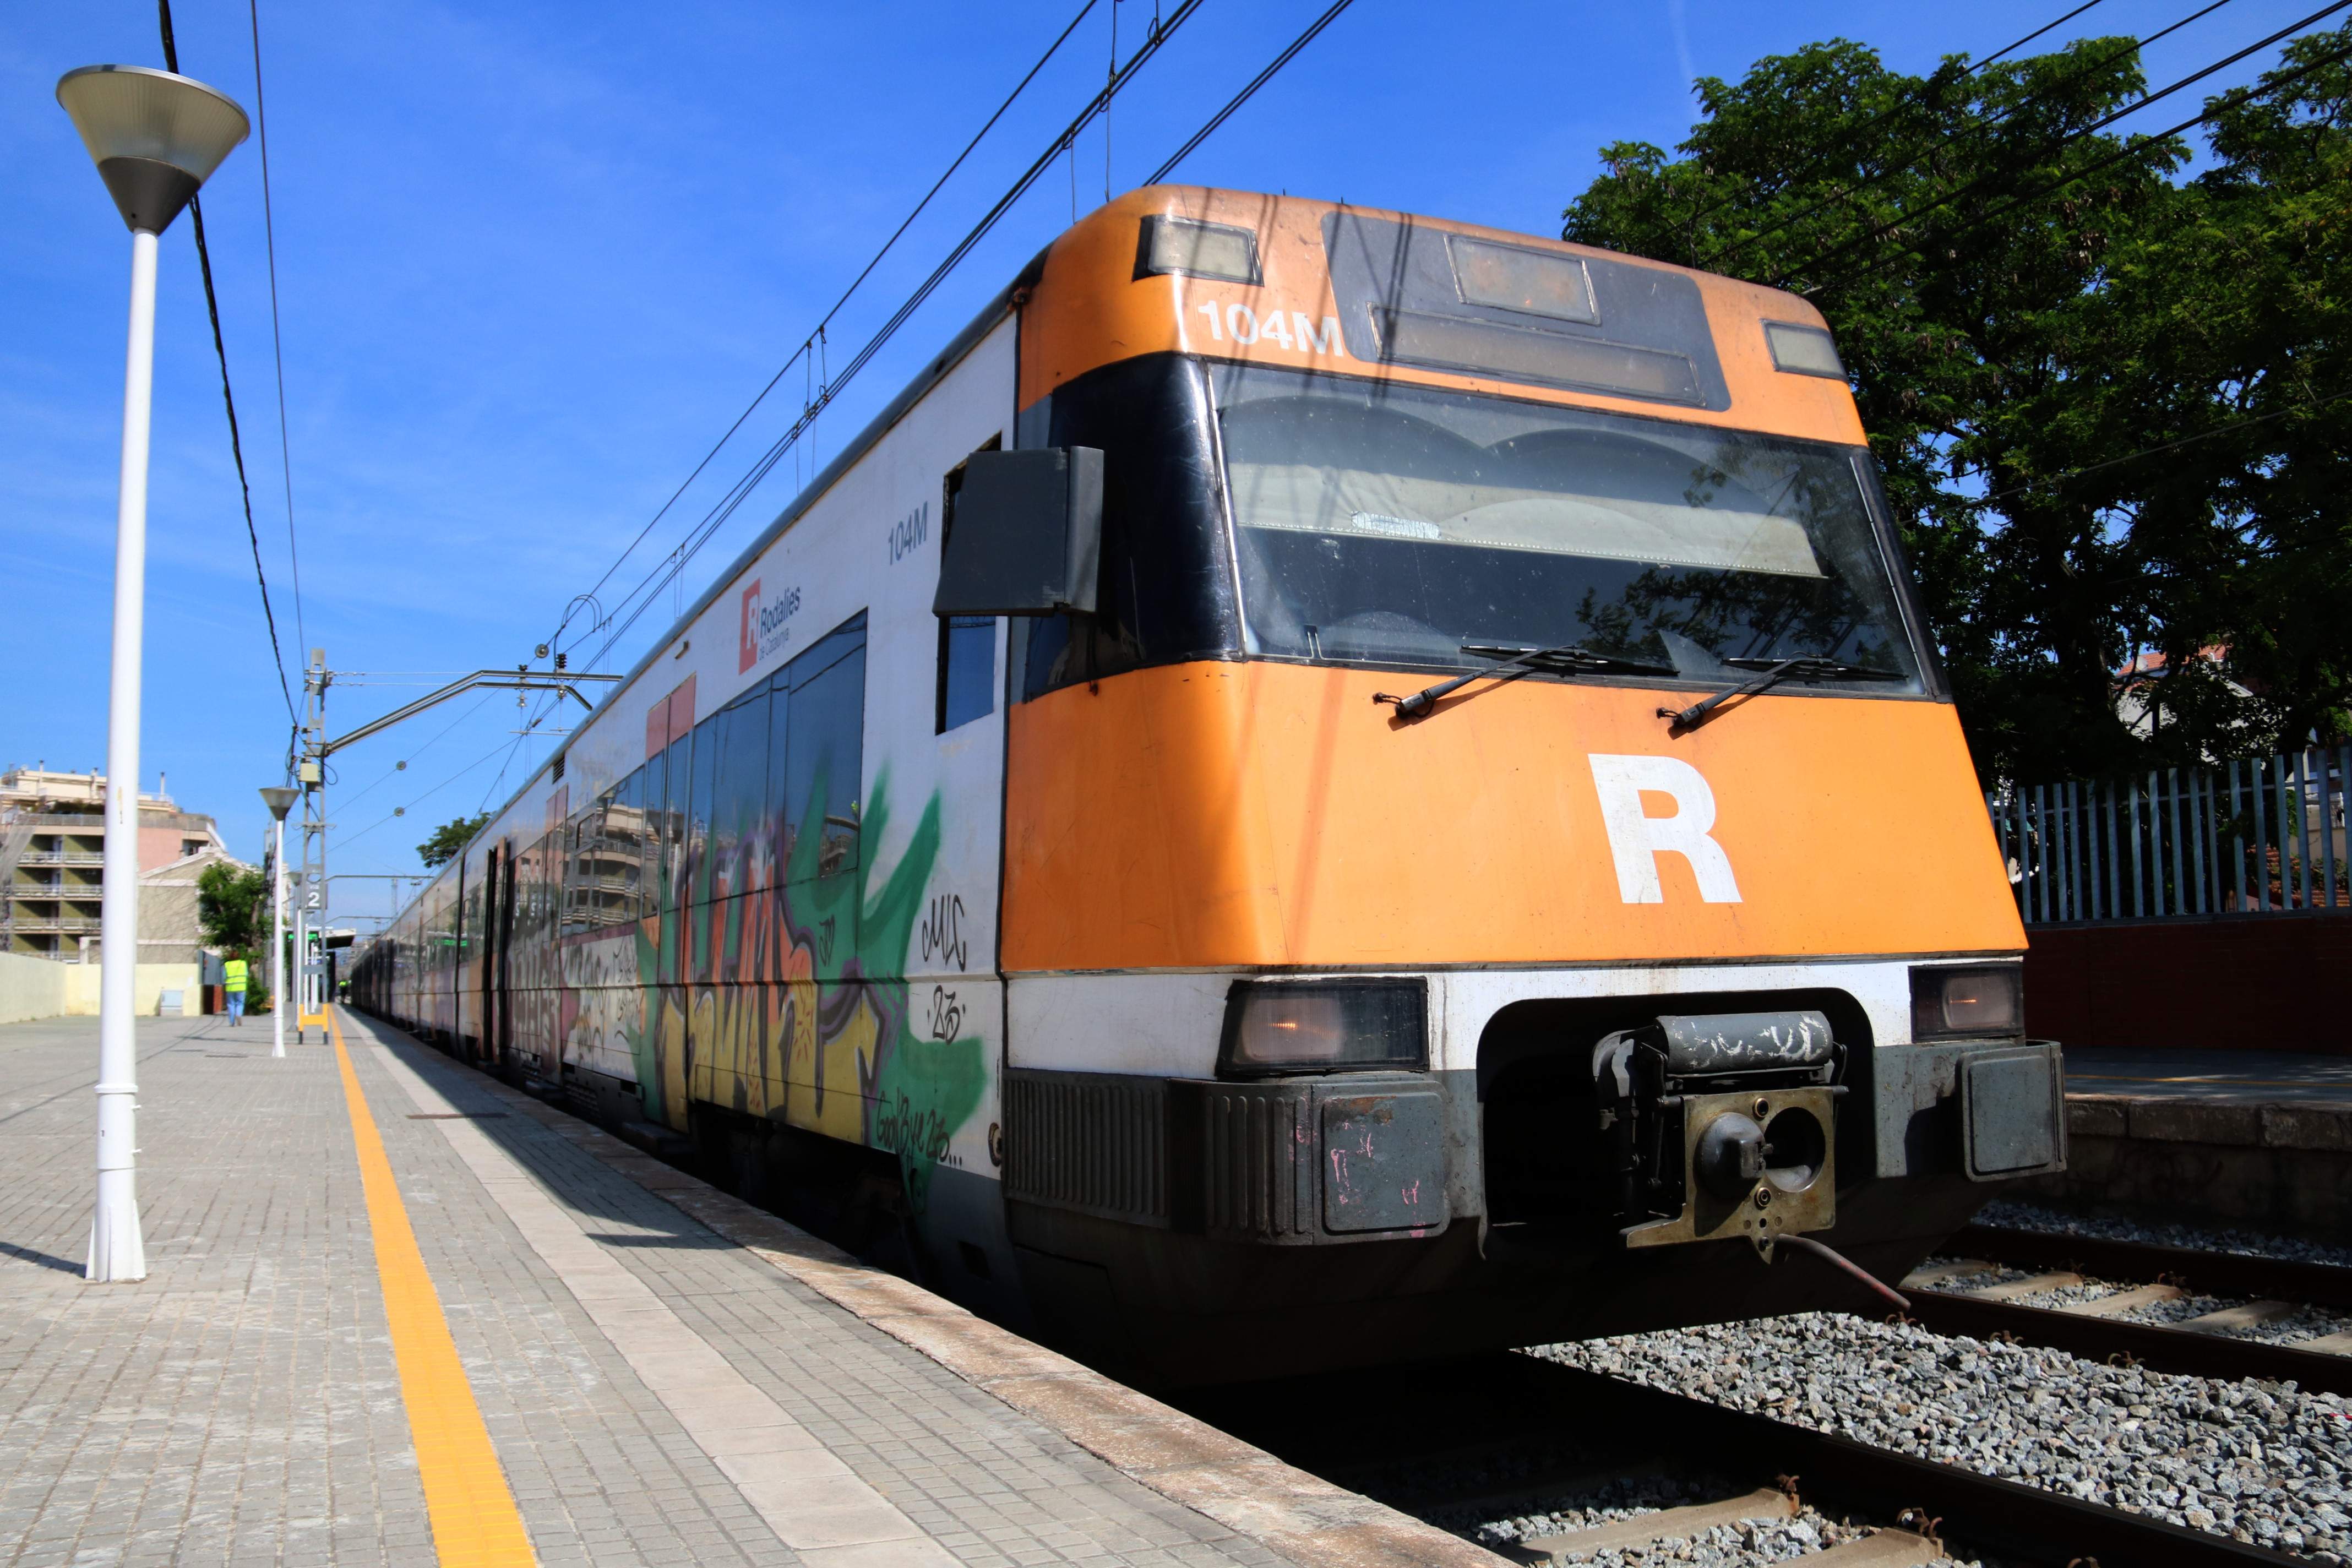 Interrompuda la circulació de trens a la R1 entre Badalona i Montgat per un atropellament